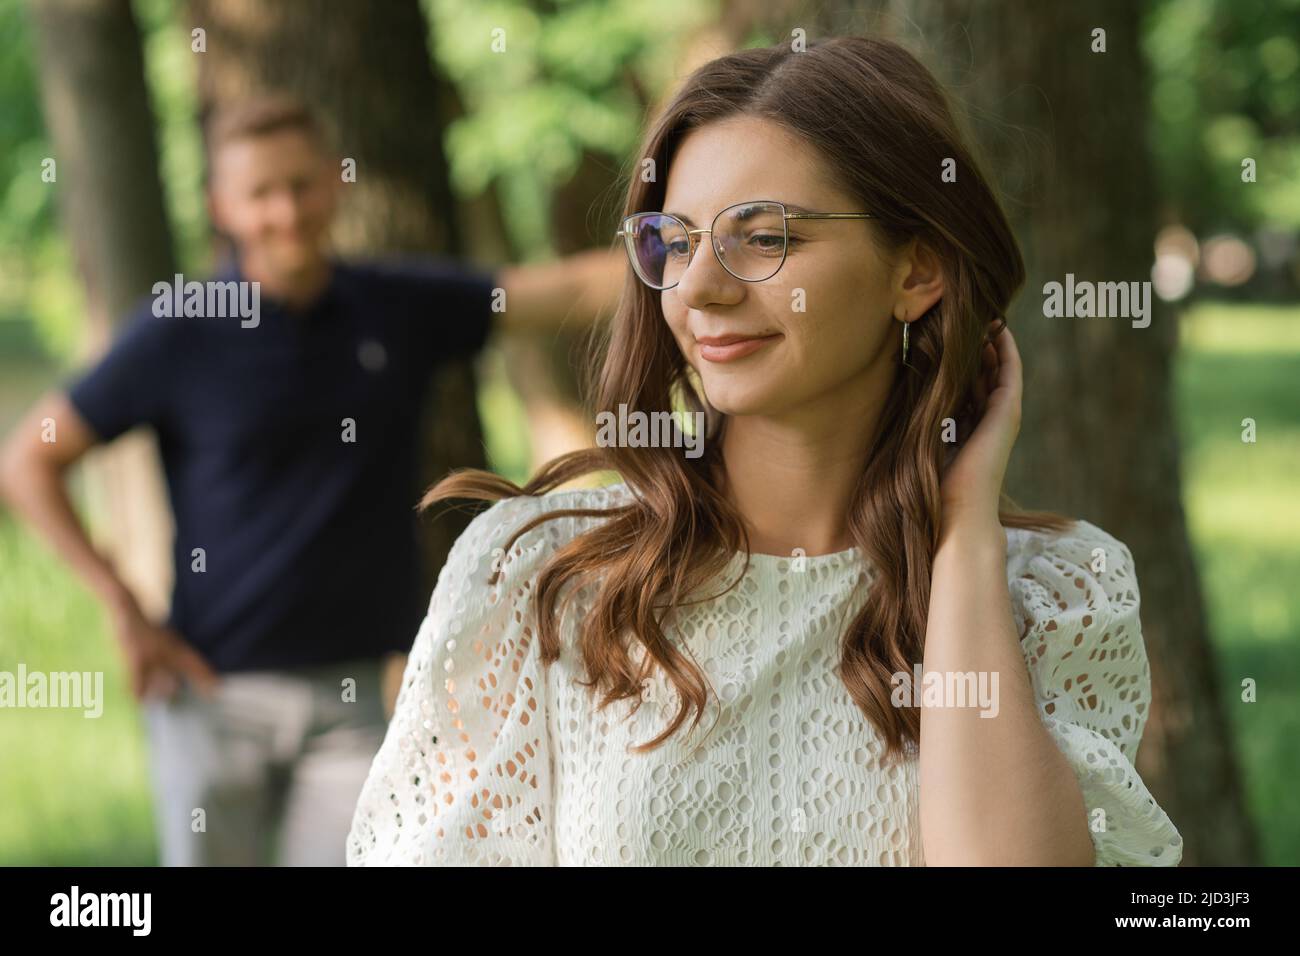 Defokussieren Mann auf Frau im Park unter Bäumen, glückliche Menschen, die Spaß am Sommertag haben, Paar verliebt. Romantischer Moment Stockfoto